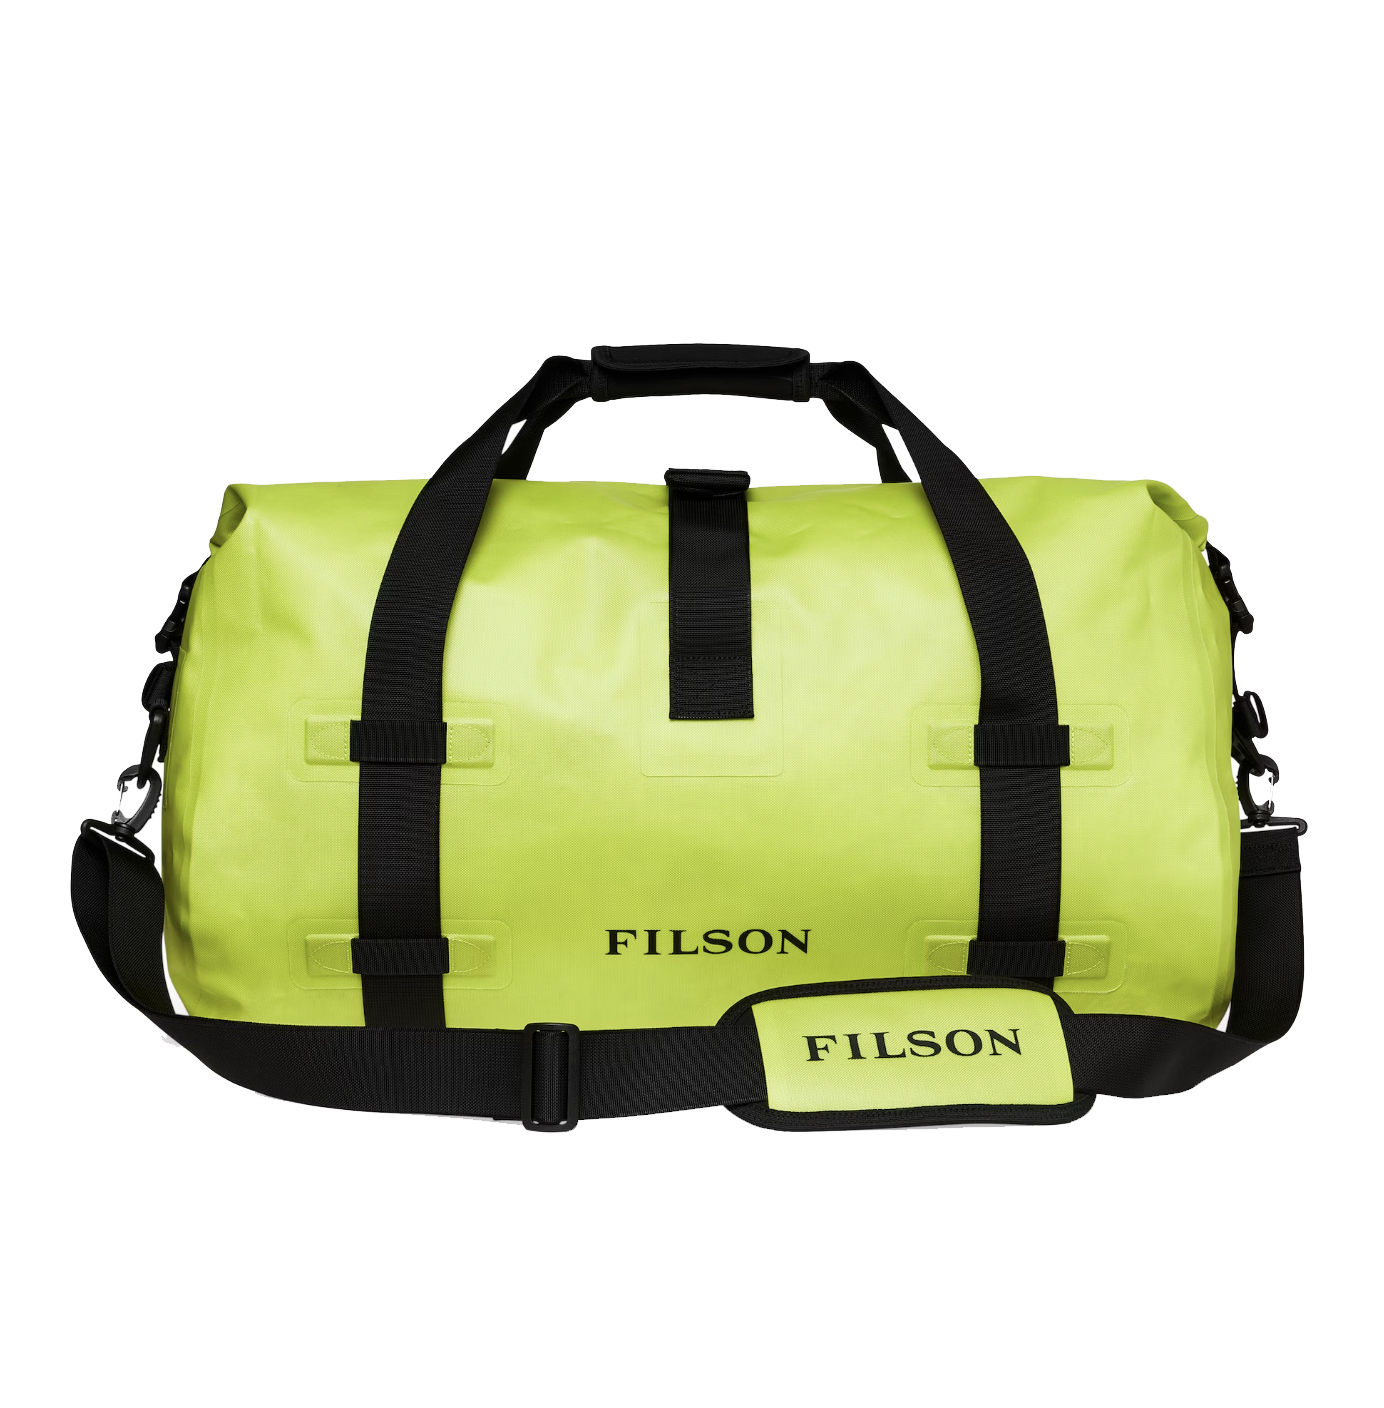 Bag Laser Hand Luggage Travel Luxury Handbags Waterproof Duffel